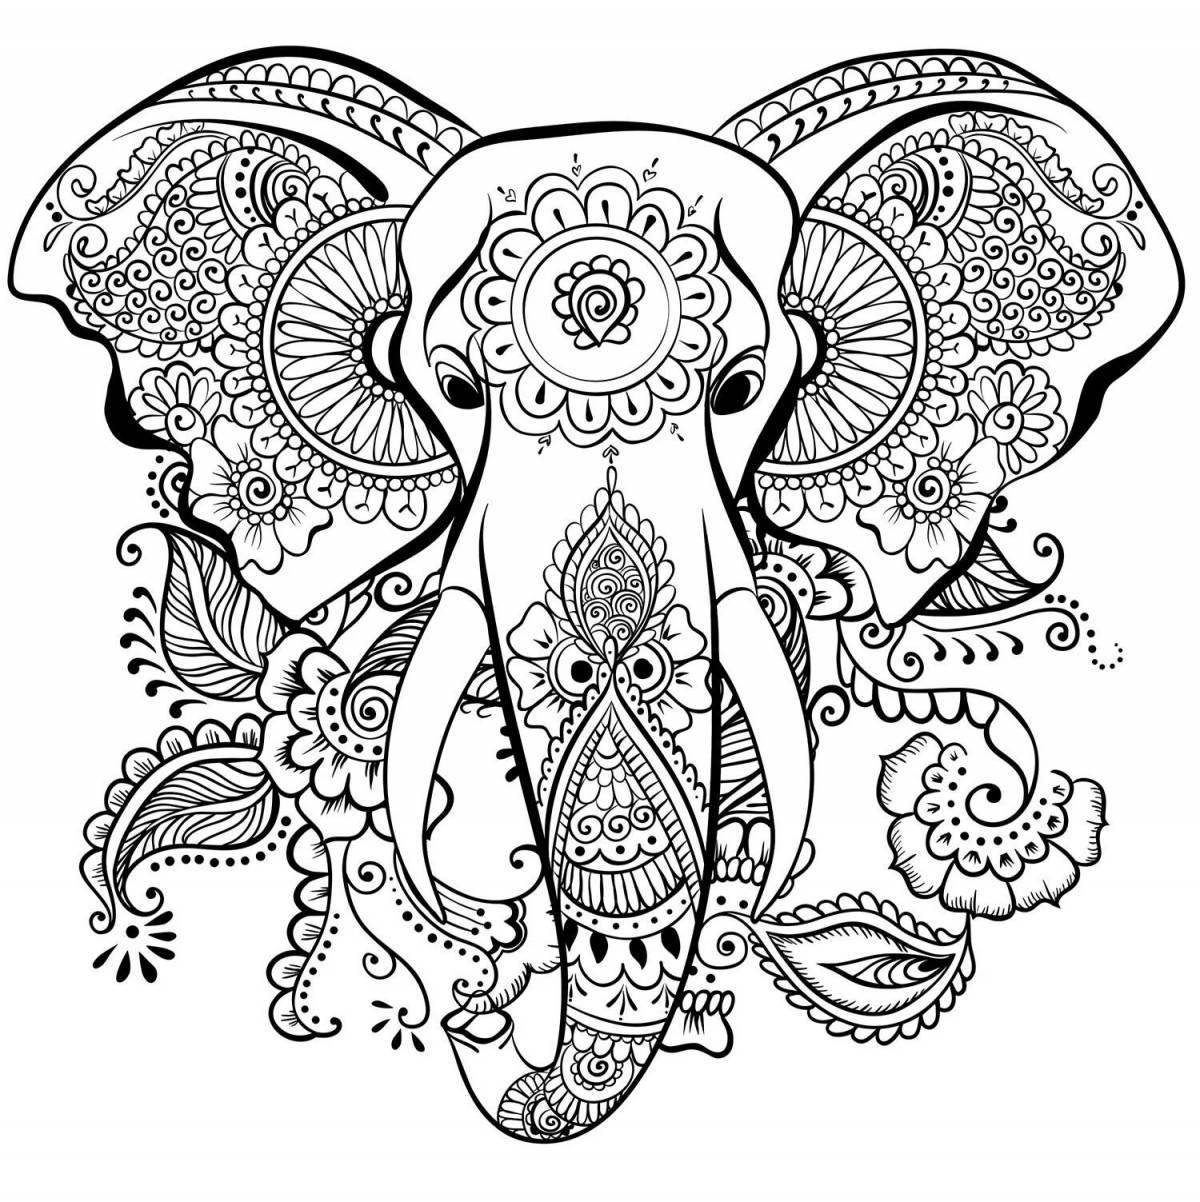 Luminous anti-stress elephant coloring book